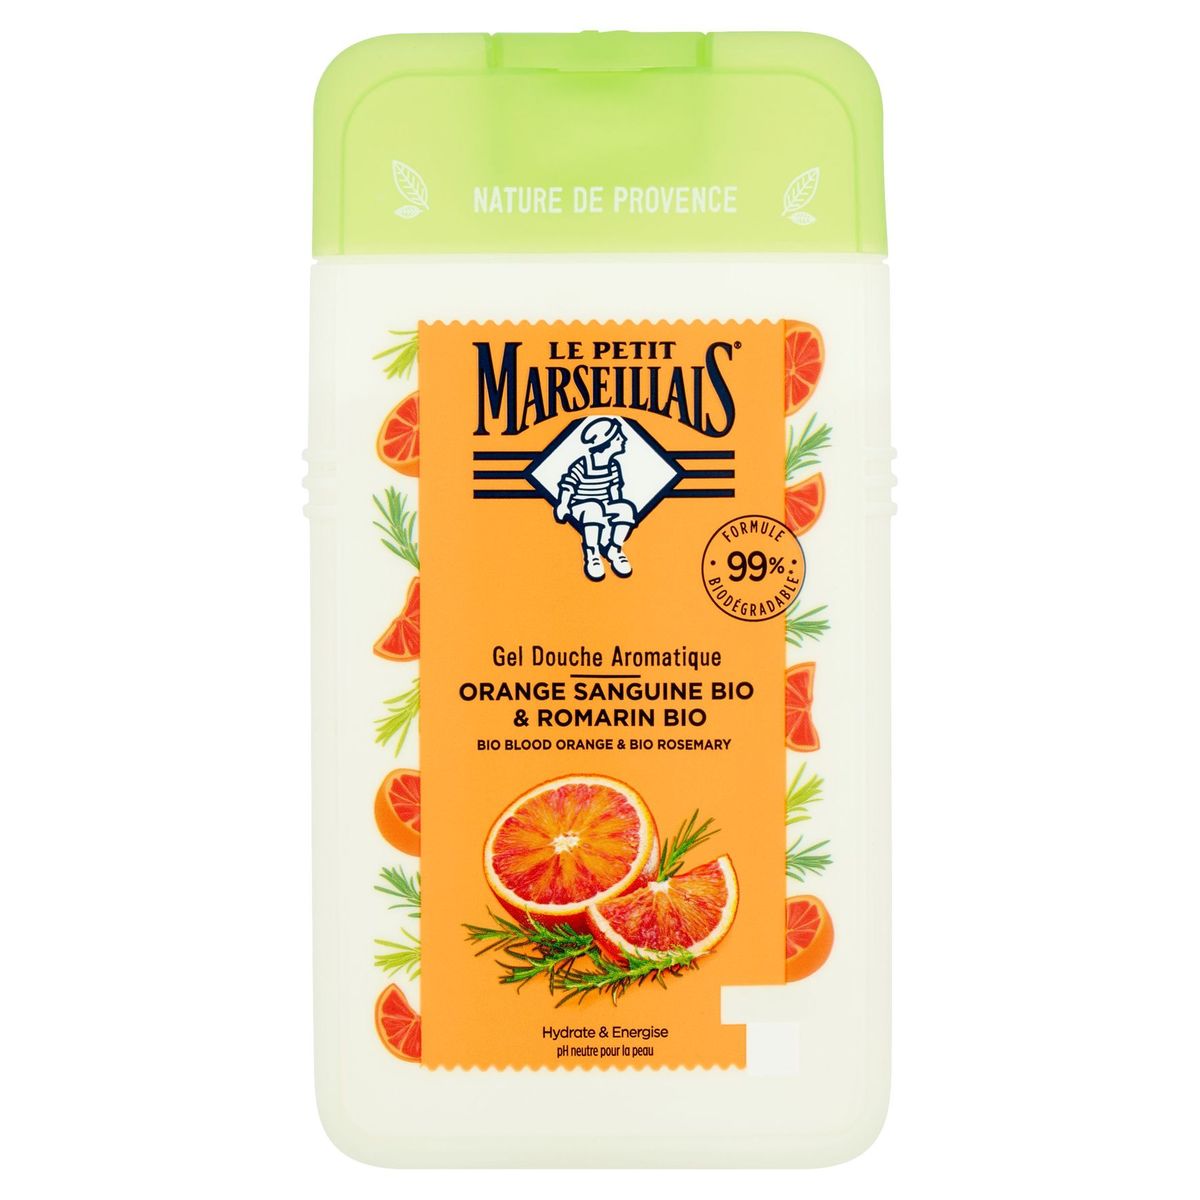 Le Petit Marseillais Gel Douche Aromatique Orange Sanguine Bio & Romarin Bio 250 ml